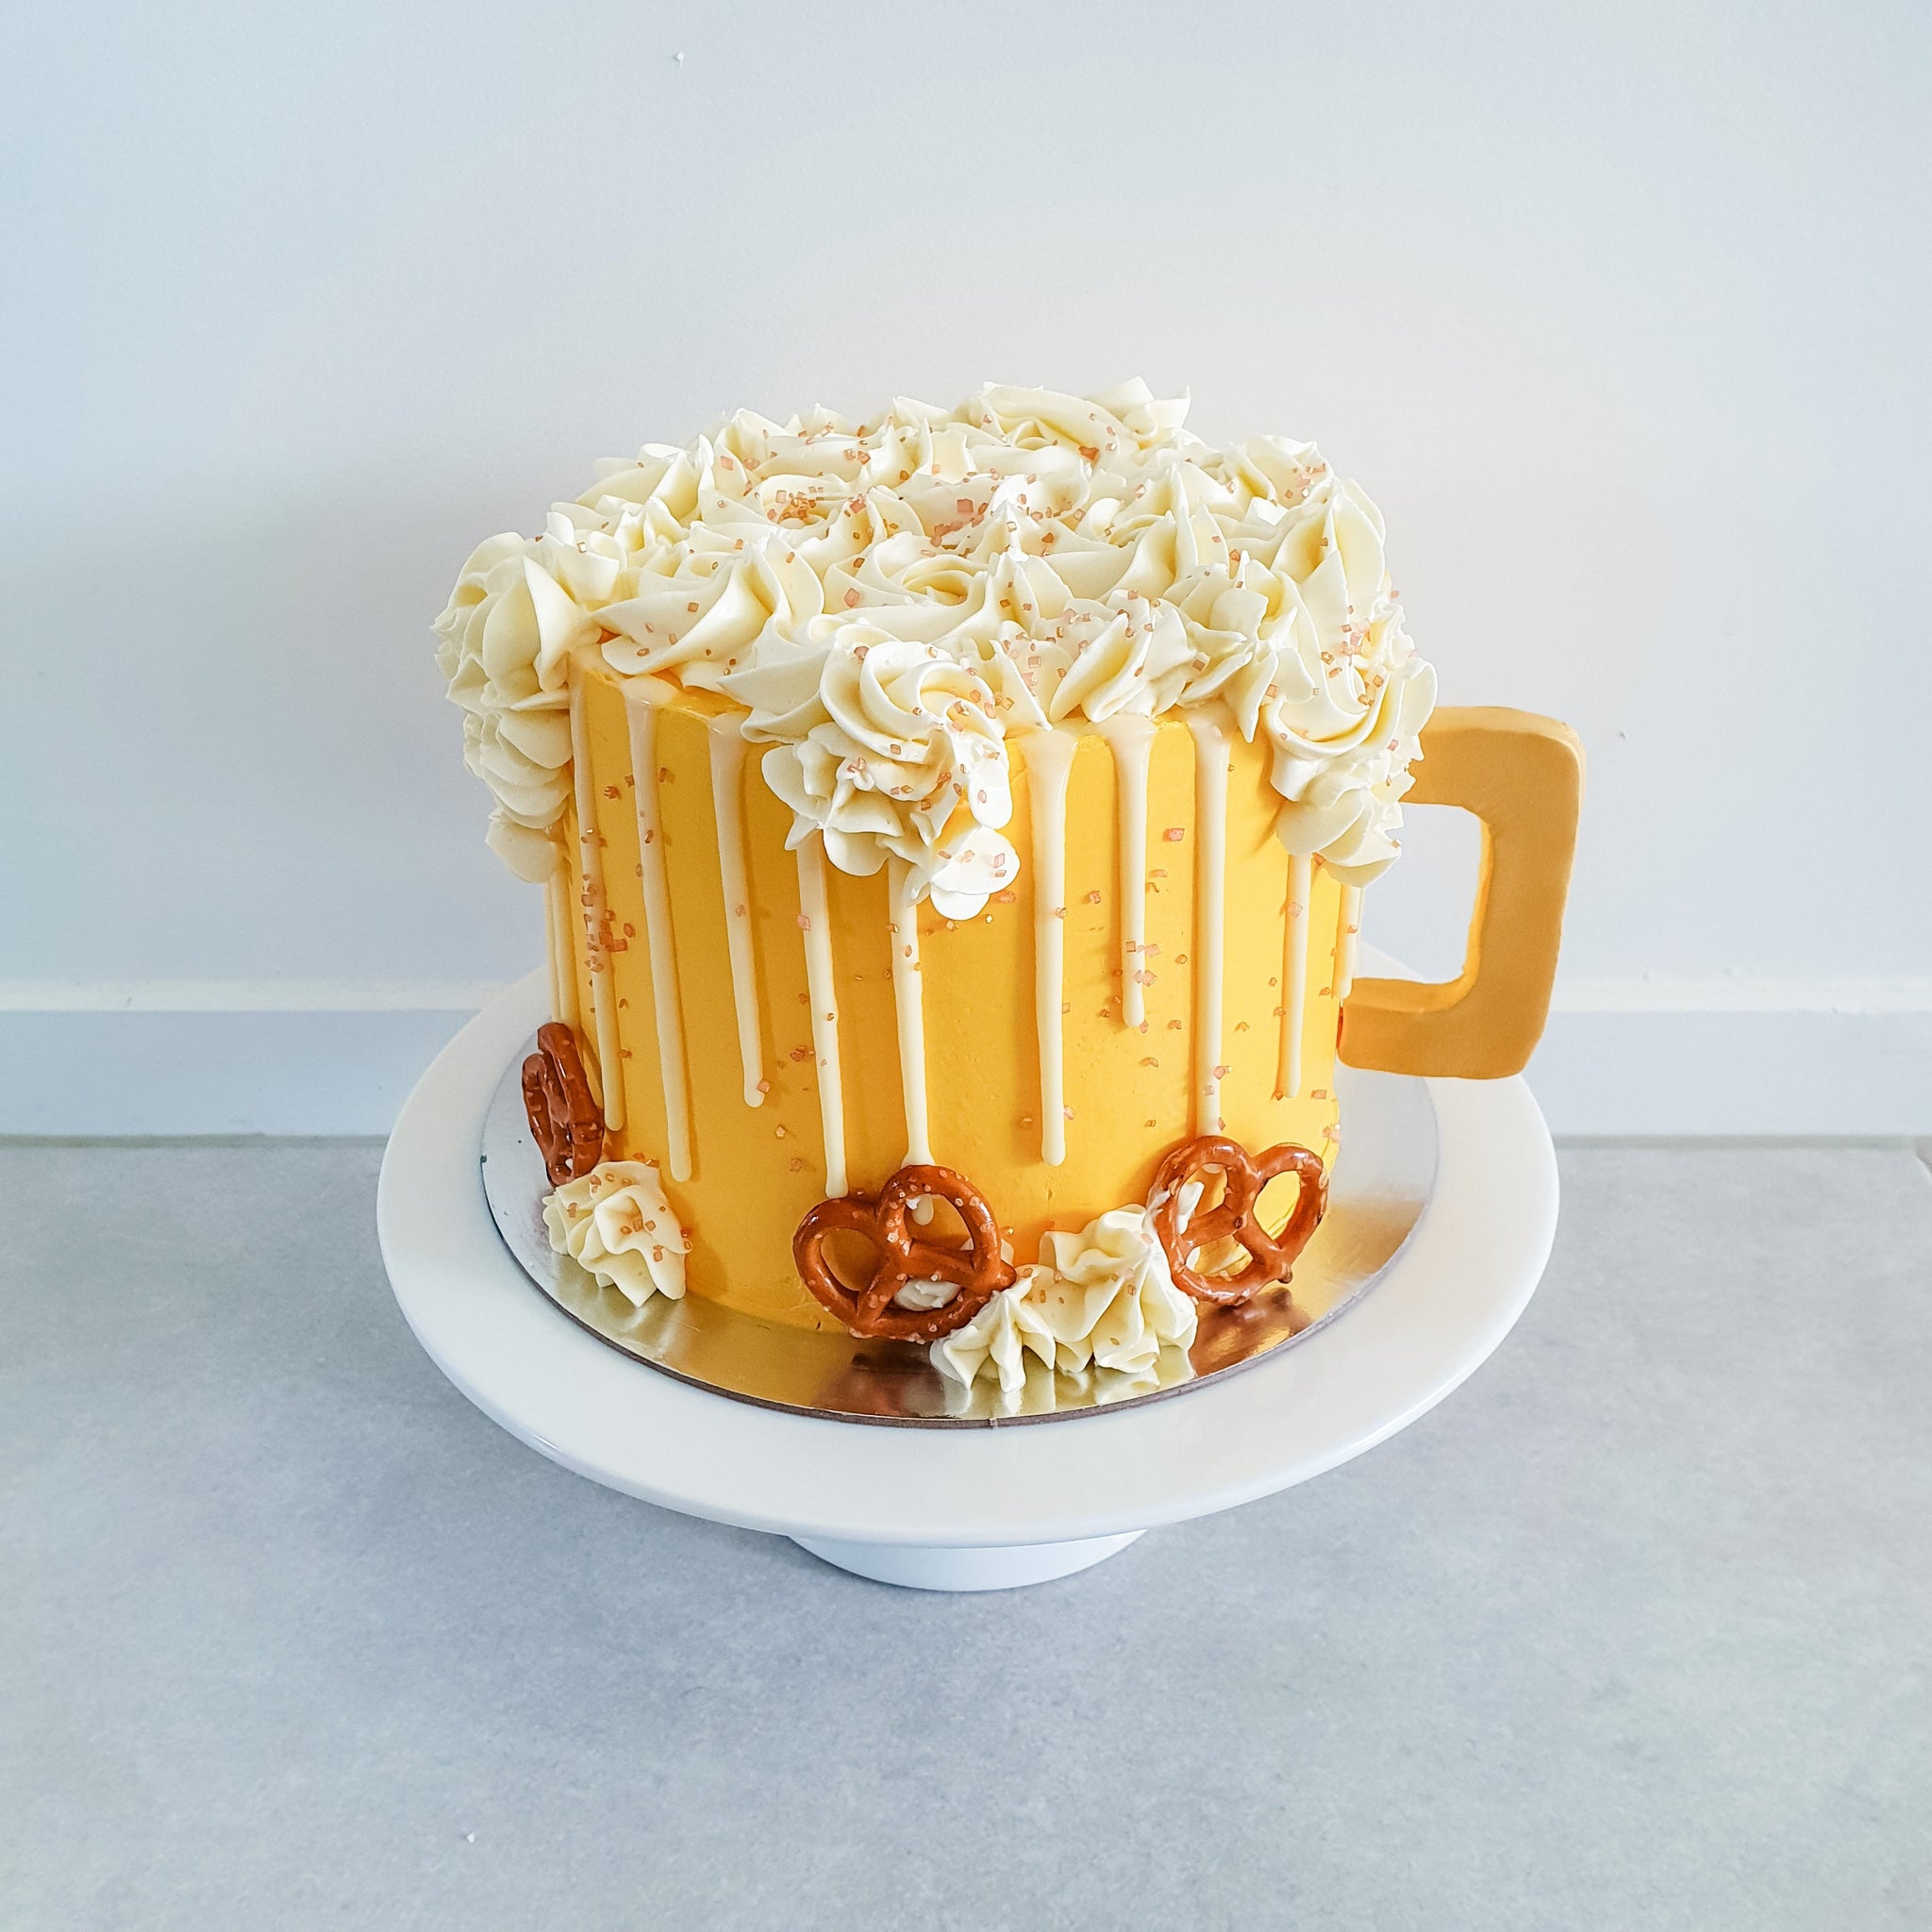 Beer Mug Cake – Cakery New Zealand